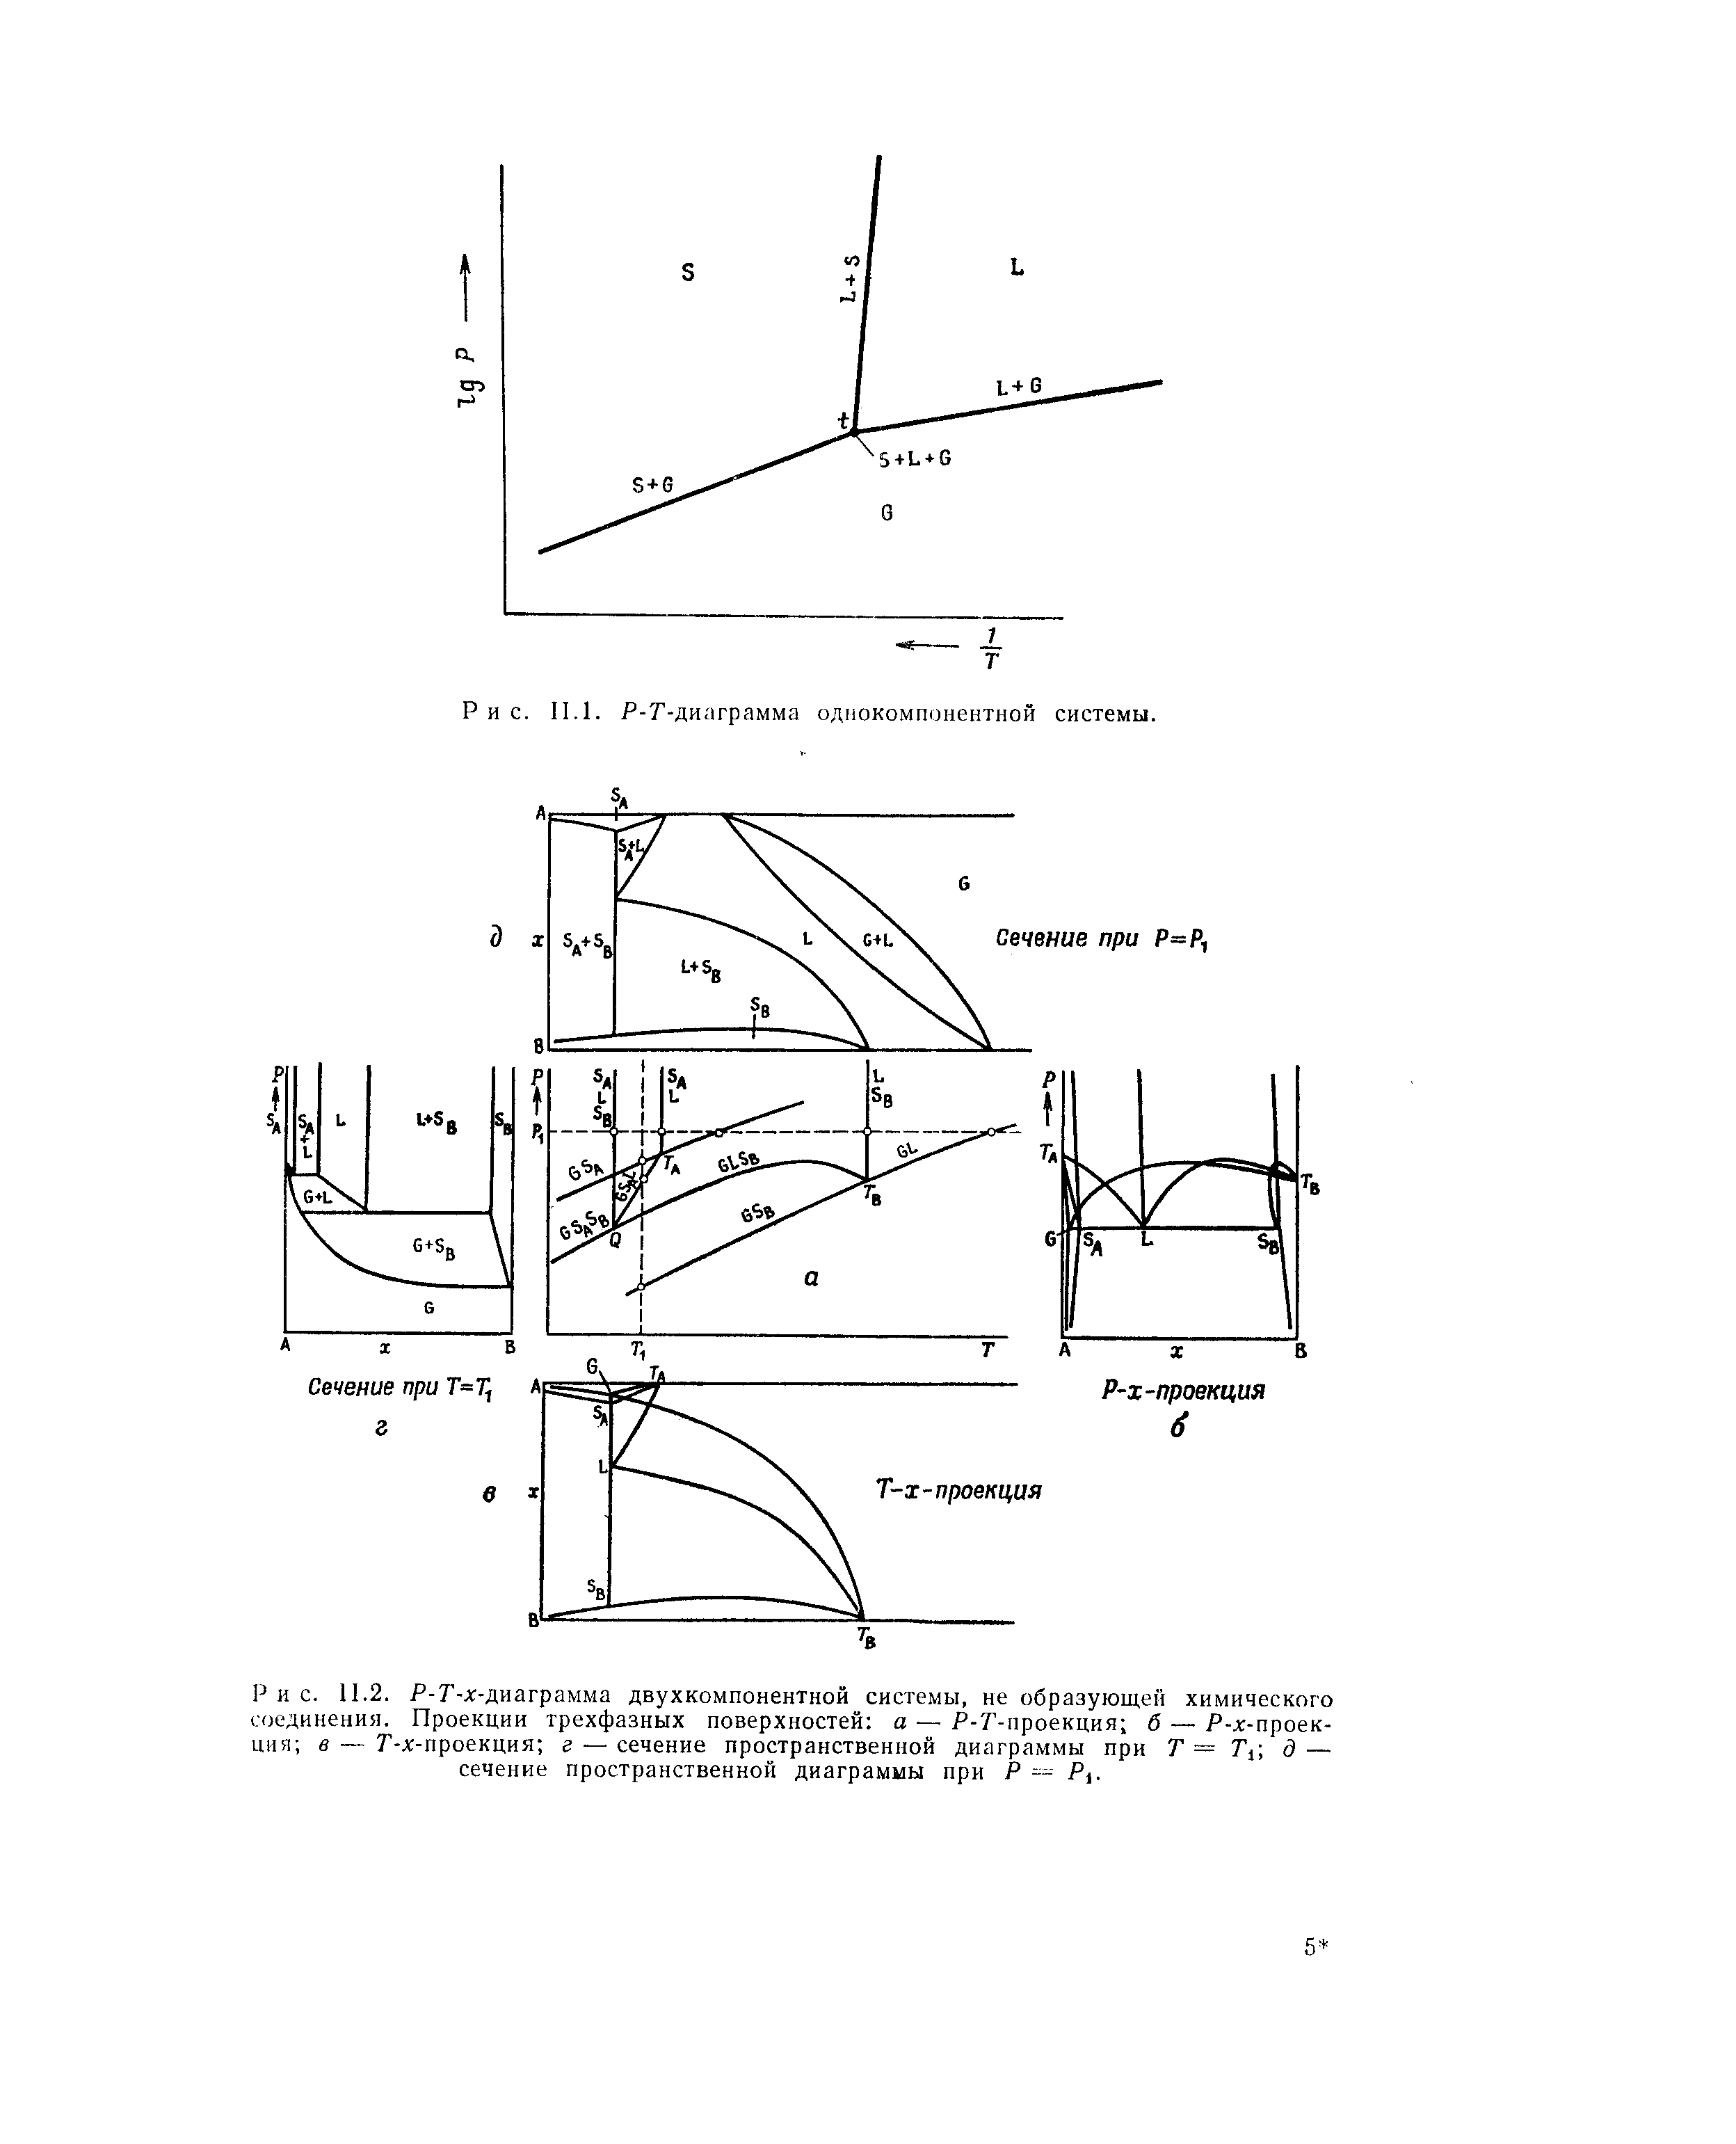 Р-Г-Аг-диаграмма двухкомпонентной системы, не образующей химического соединения. Проекции трехфазных поверхностей а — Р-Г-проекция б — Р-д -проек-ция в — Г-х-проекция е — сечение пространственной диаграммы при Т — Ти д — сечение пространственной диаграммы при Р Pi.